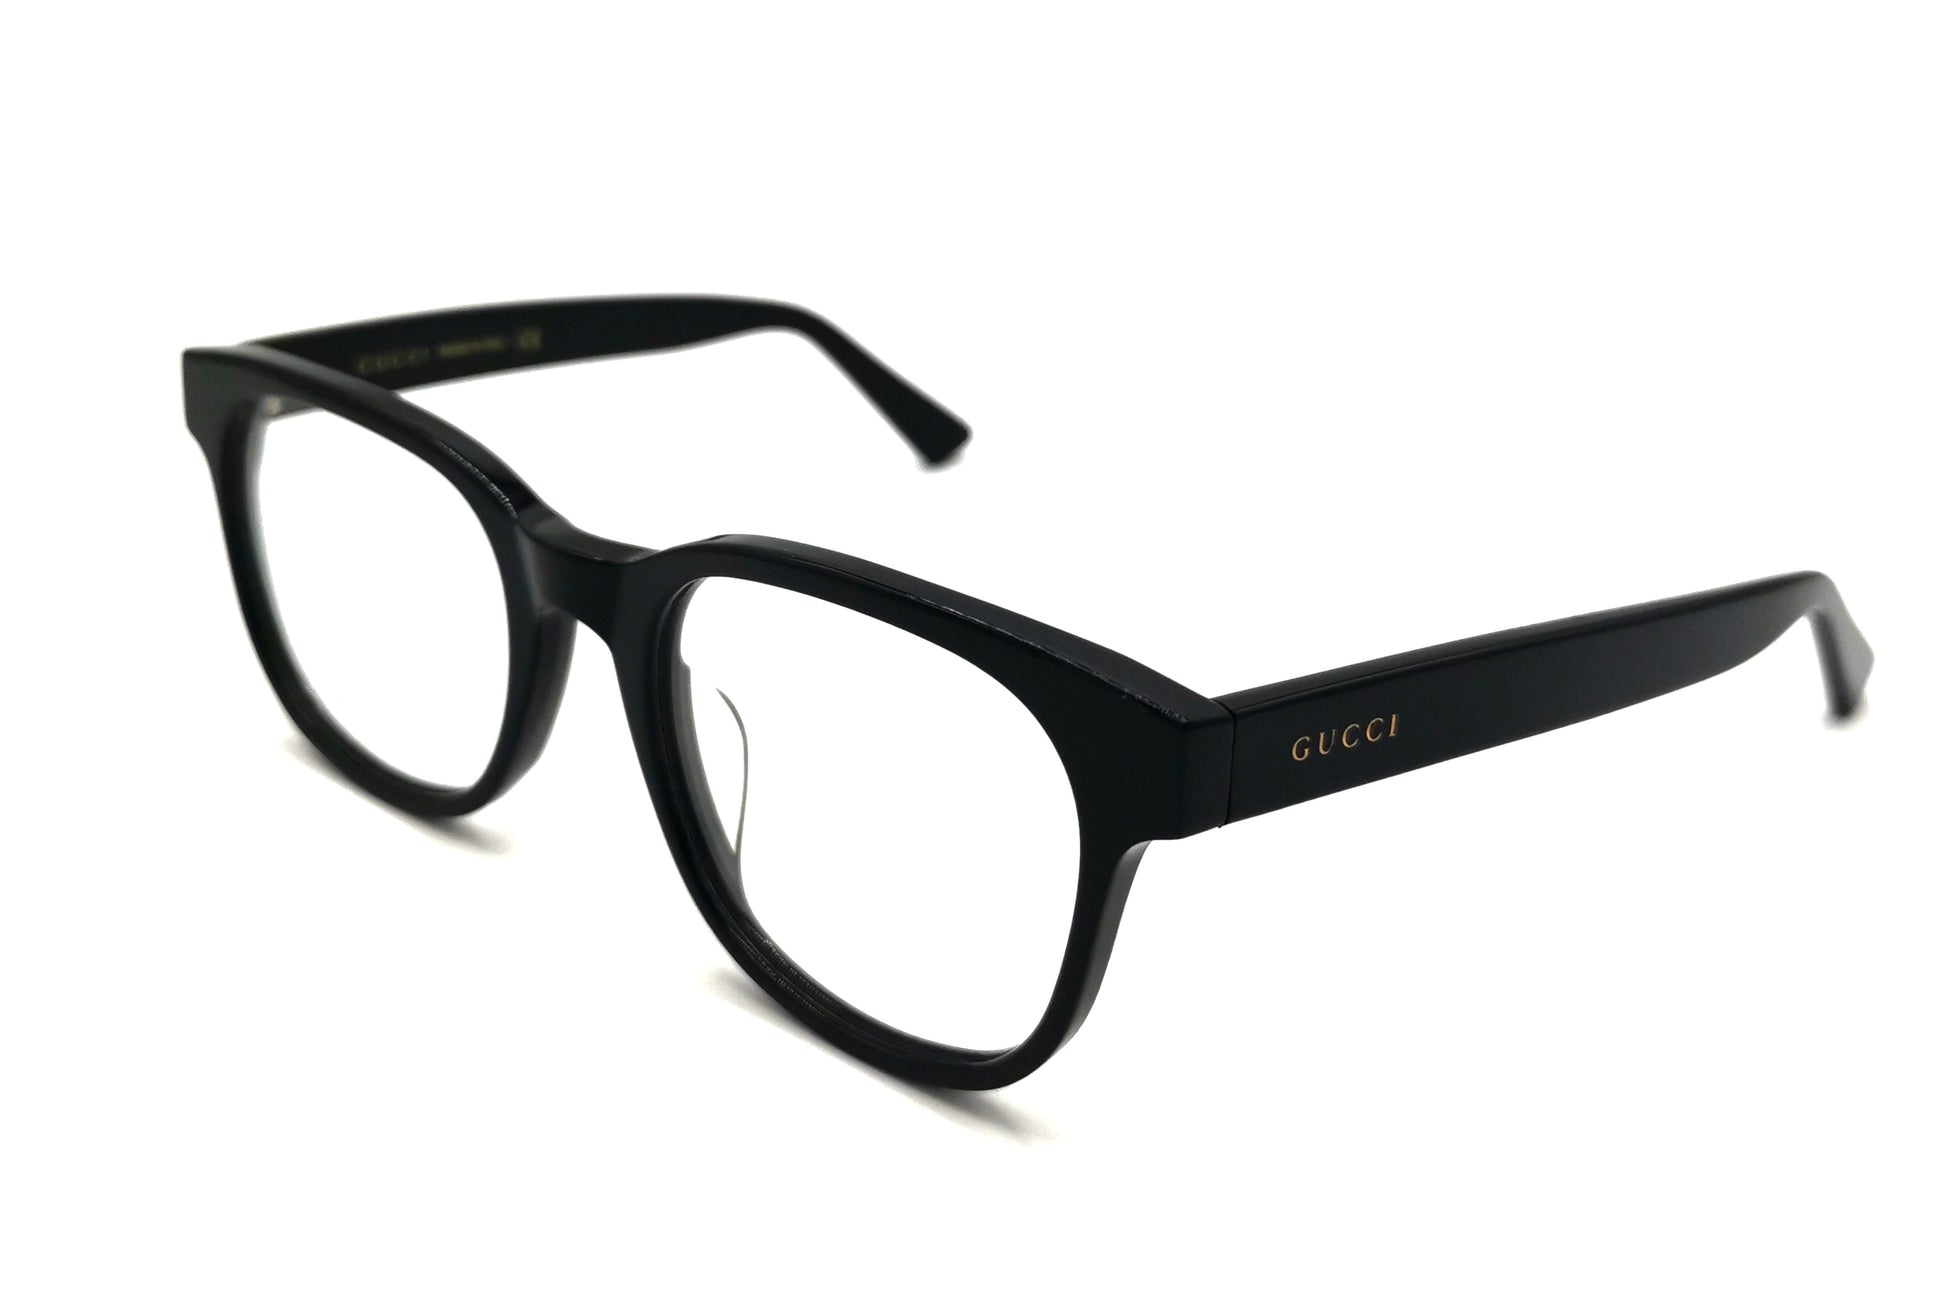 NS Luxury - 0050 - Black - Eyeglasses